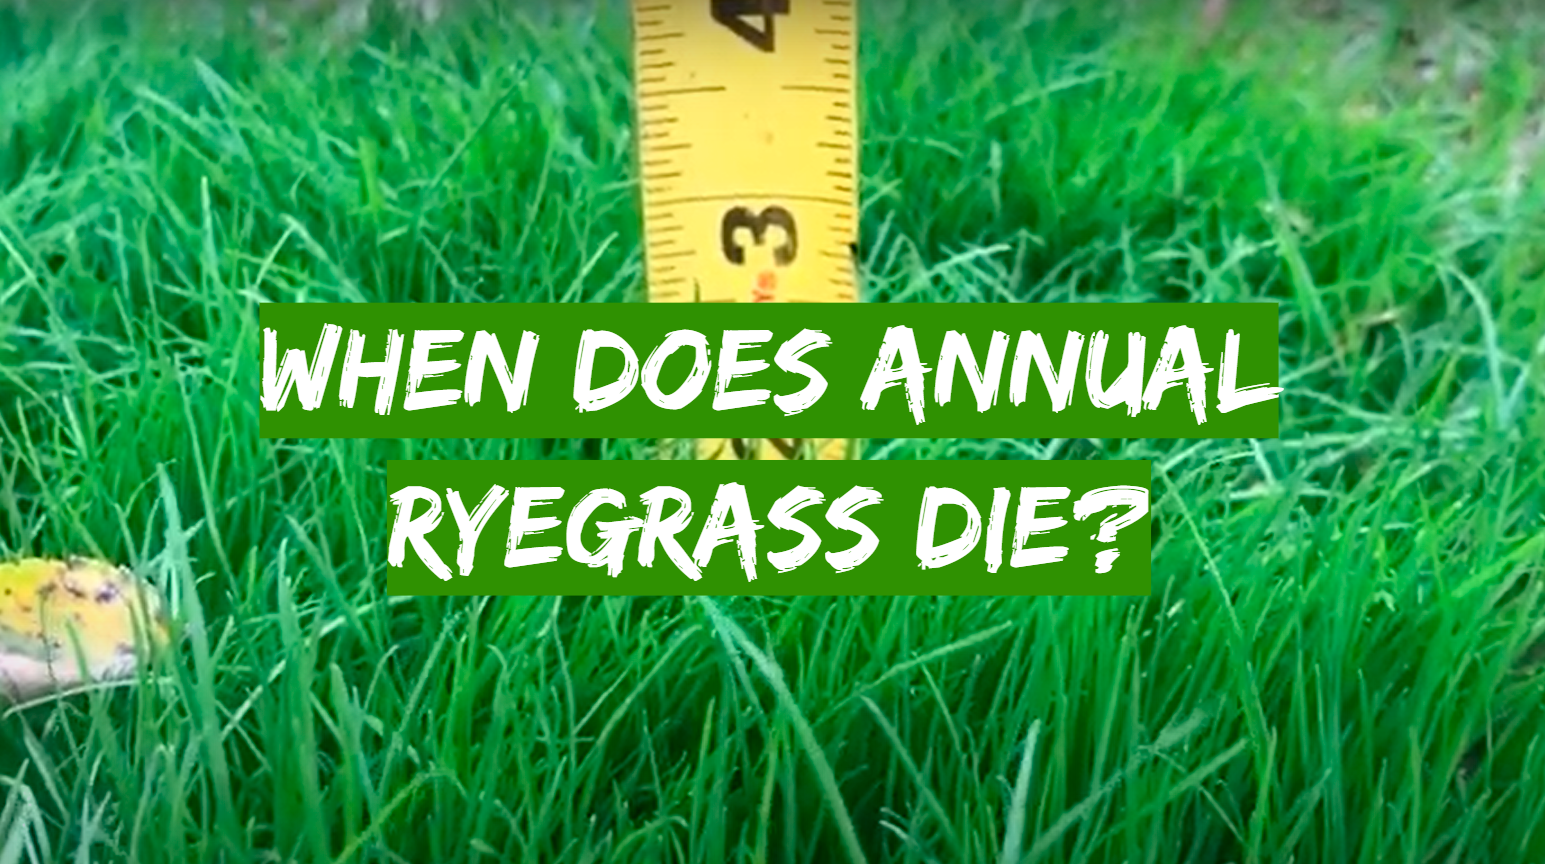 When Does Annual Ryegrass Die?